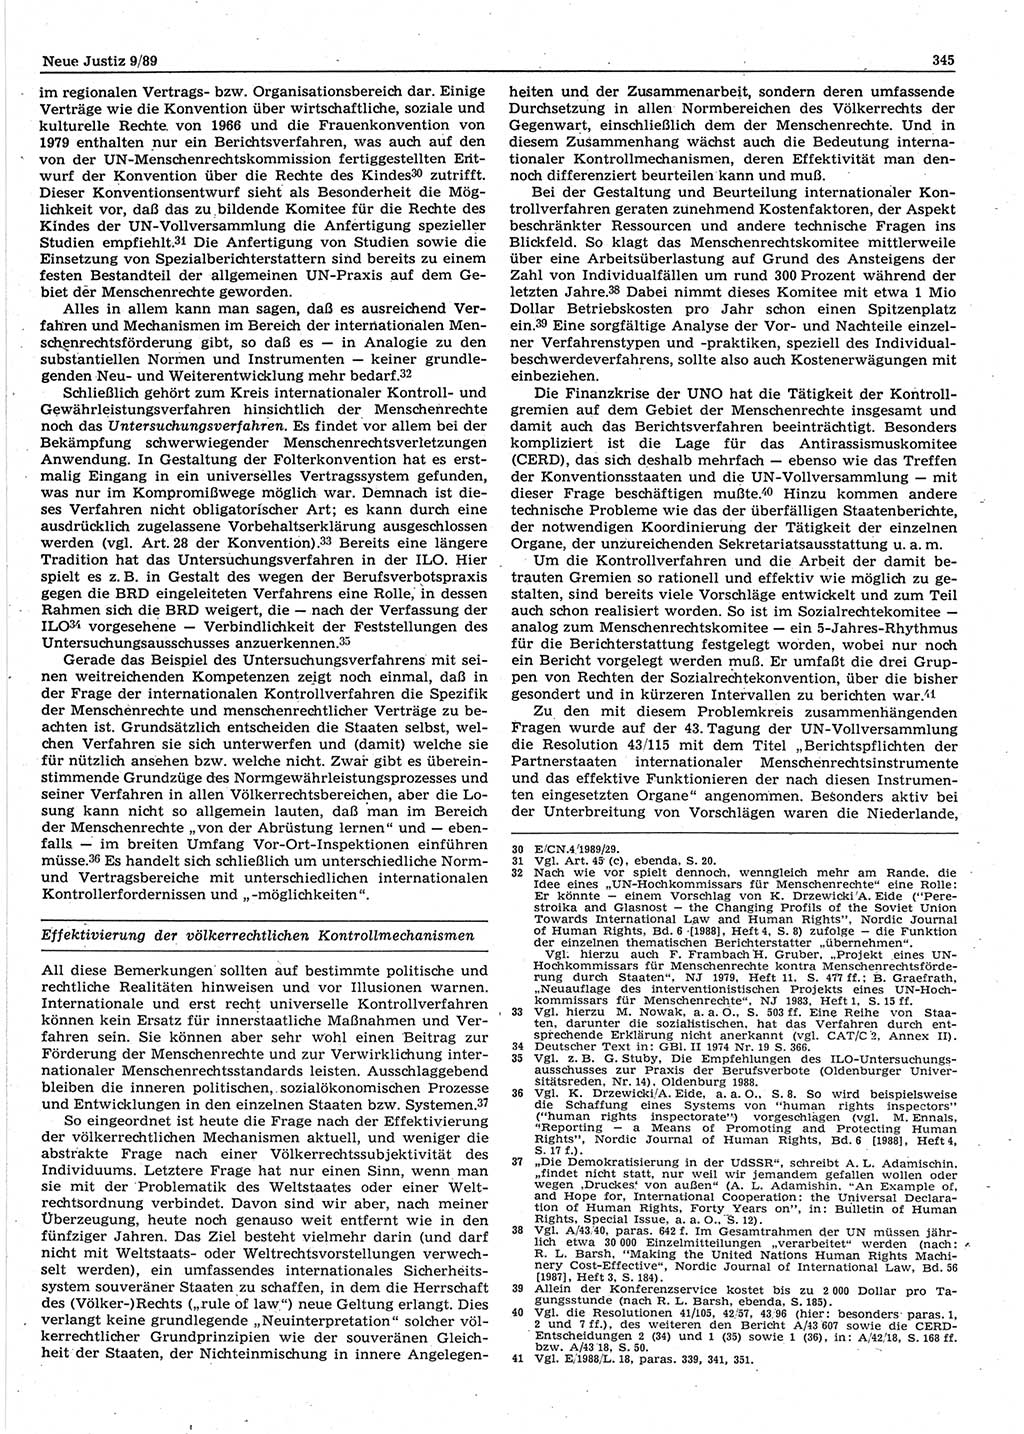 Neue Justiz (NJ), Zeitschrift für sozialistisches Recht und Gesetzlichkeit [Deutsche Demokratische Republik (DDR)], 43. Jahrgang 1989, Seite 345 (NJ DDR 1989, S. 345)